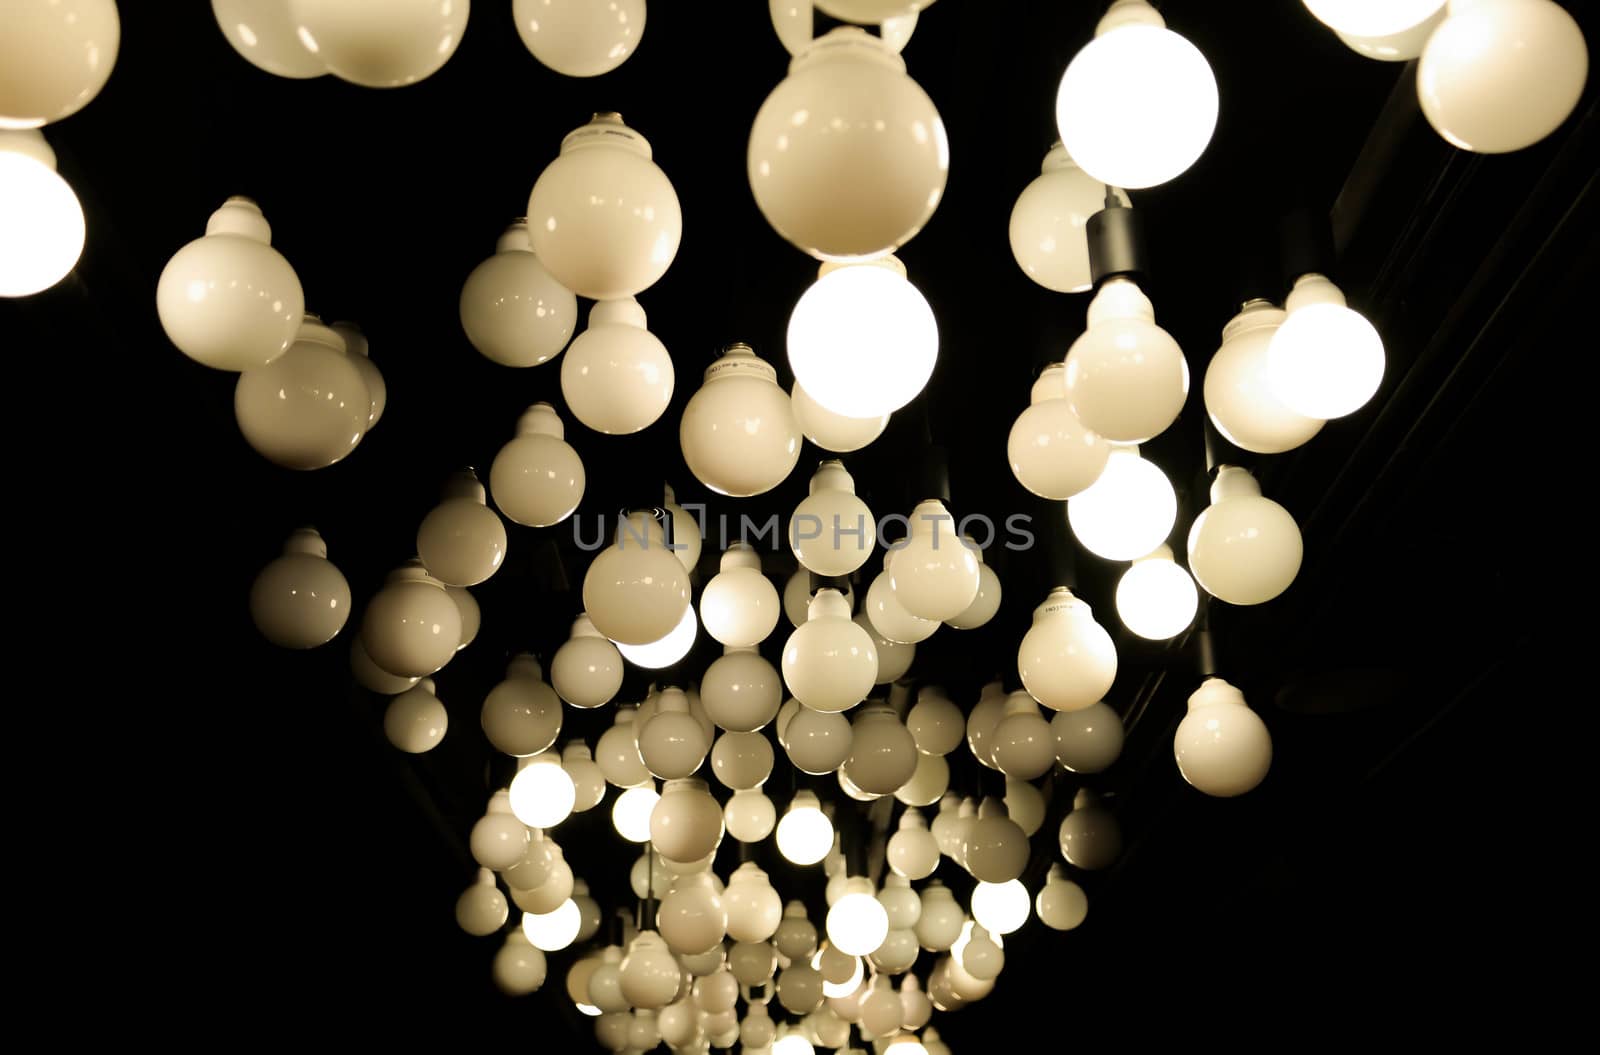 Lighting ball - Ceiling lamp